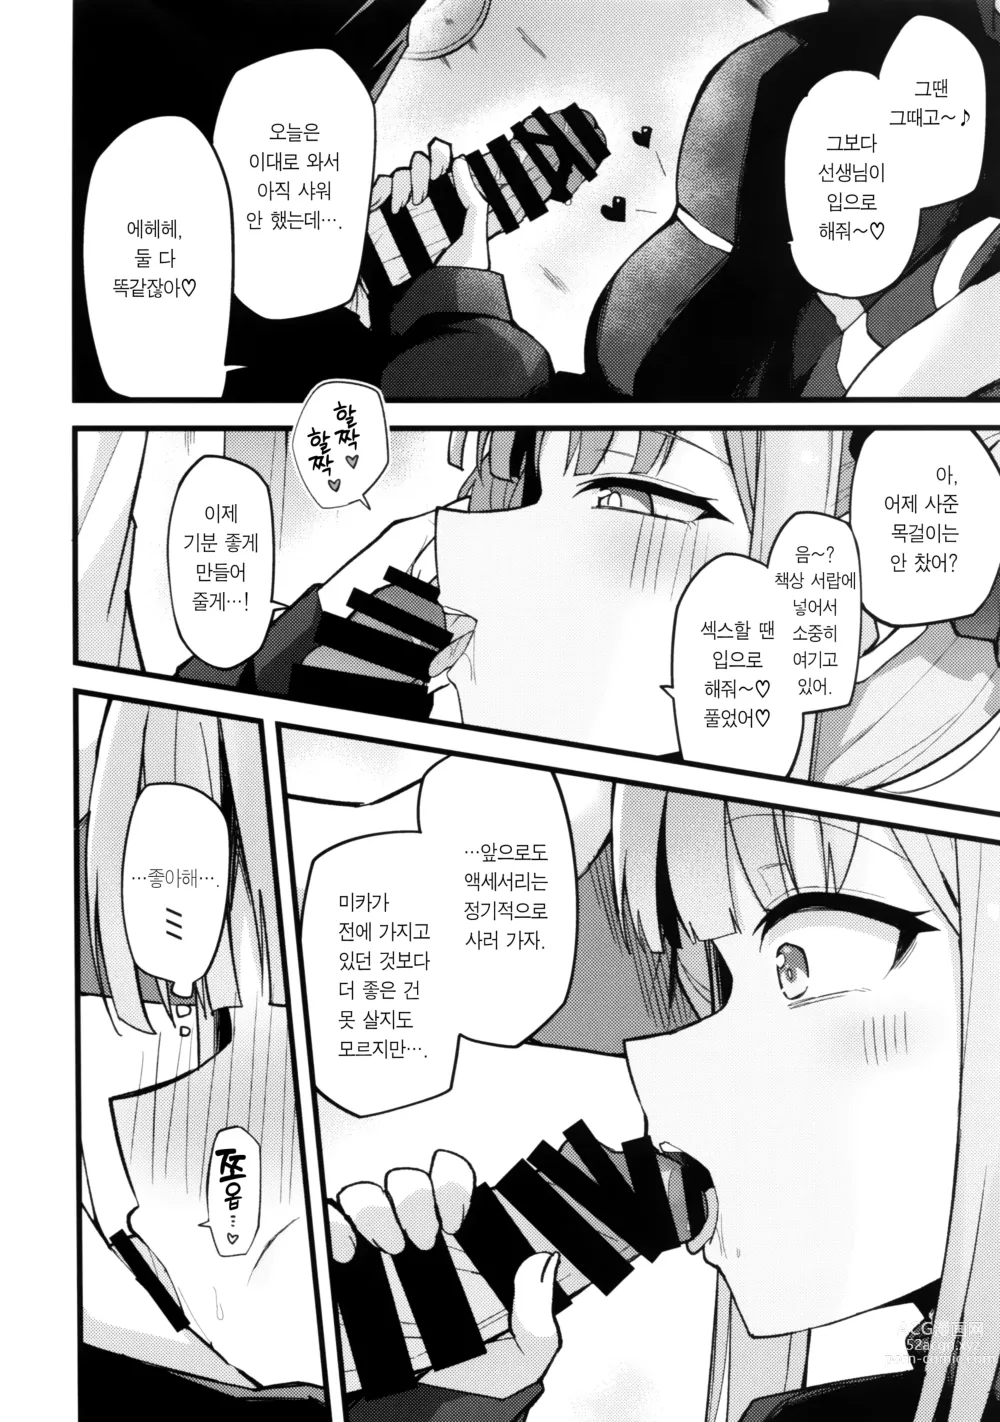 Page 7 of doujinshi 미카, 소리 내지 마.